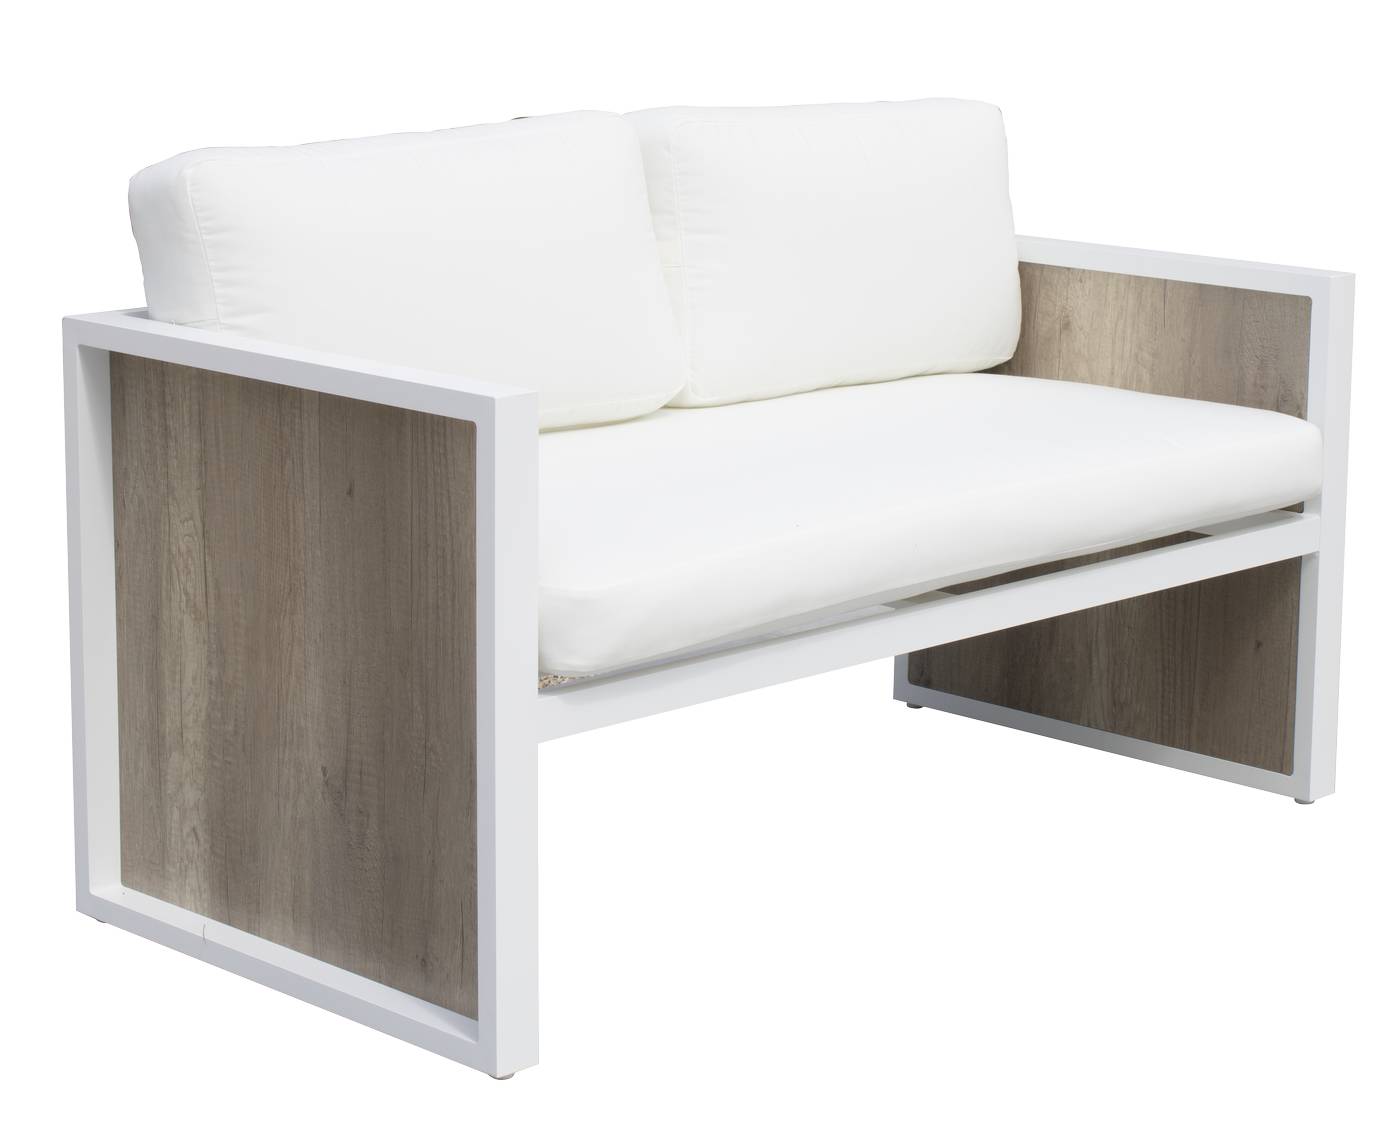 Sofá 2 plazas para exterior, de alumino color blanco y HPL color maderma, con cojines confort desenfundables.